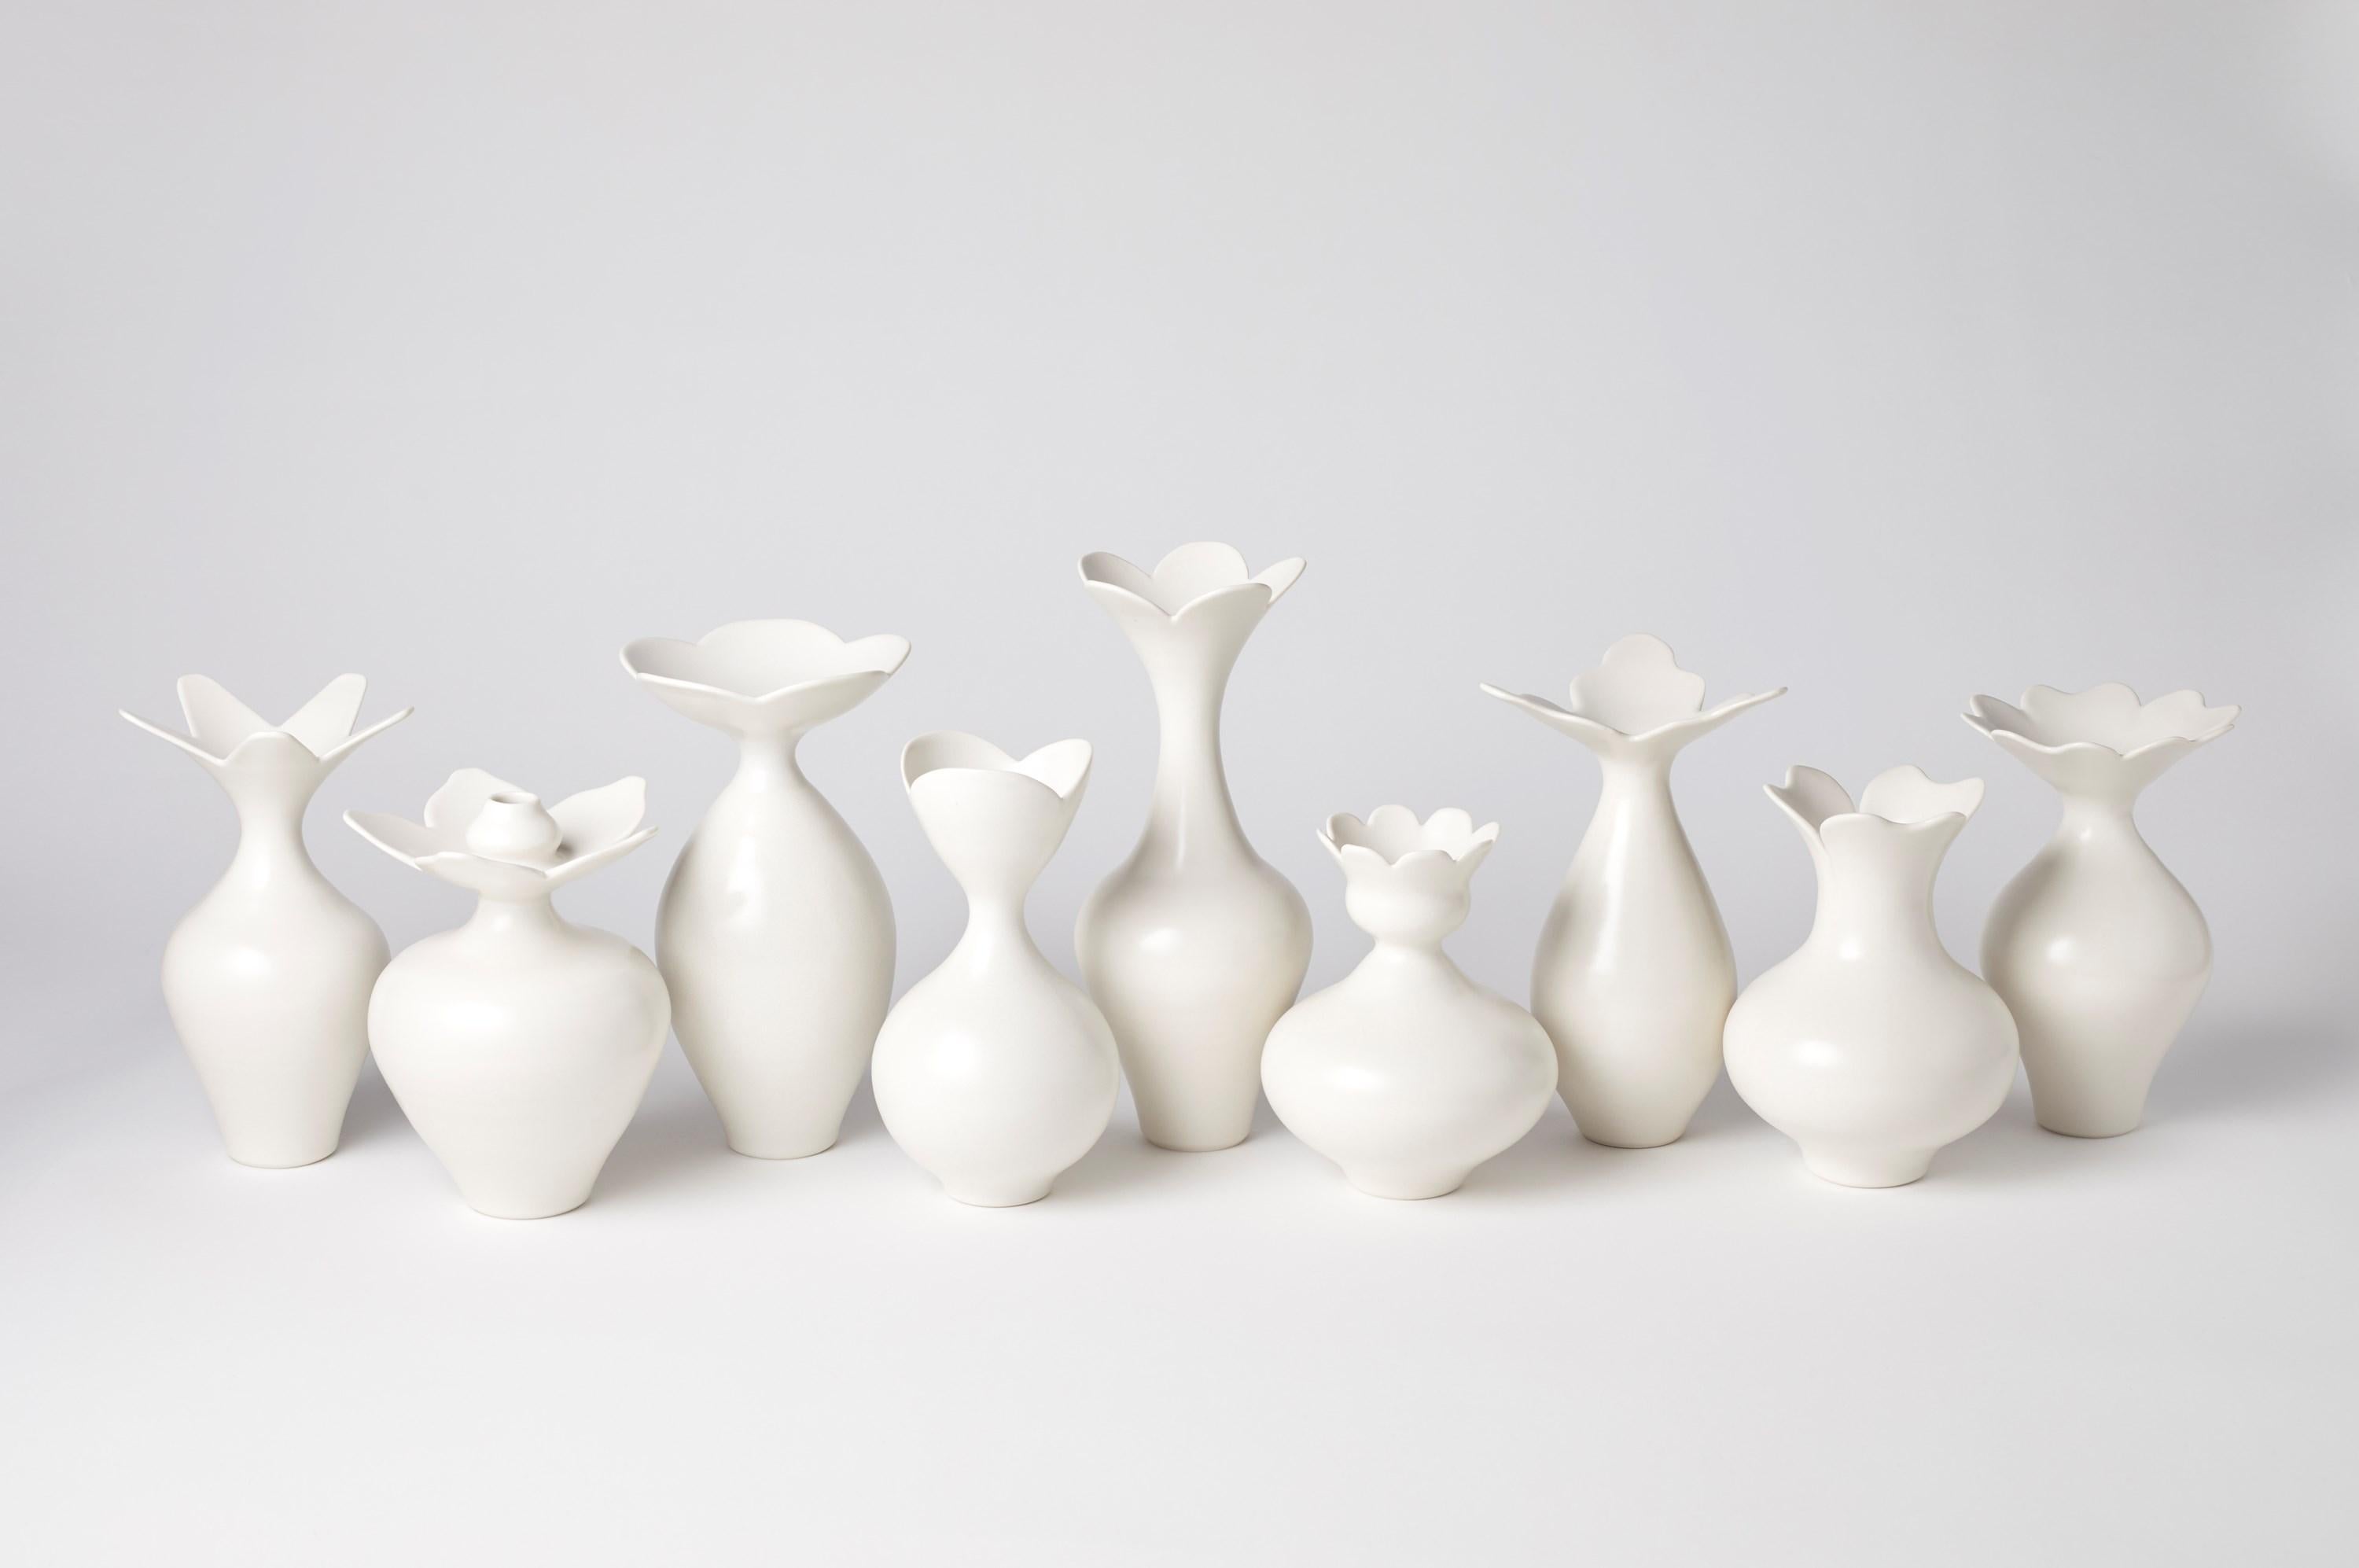 Organic Modern Vase with Petal Rim, a Unique White Porcelain Vase by Vivienne Foley